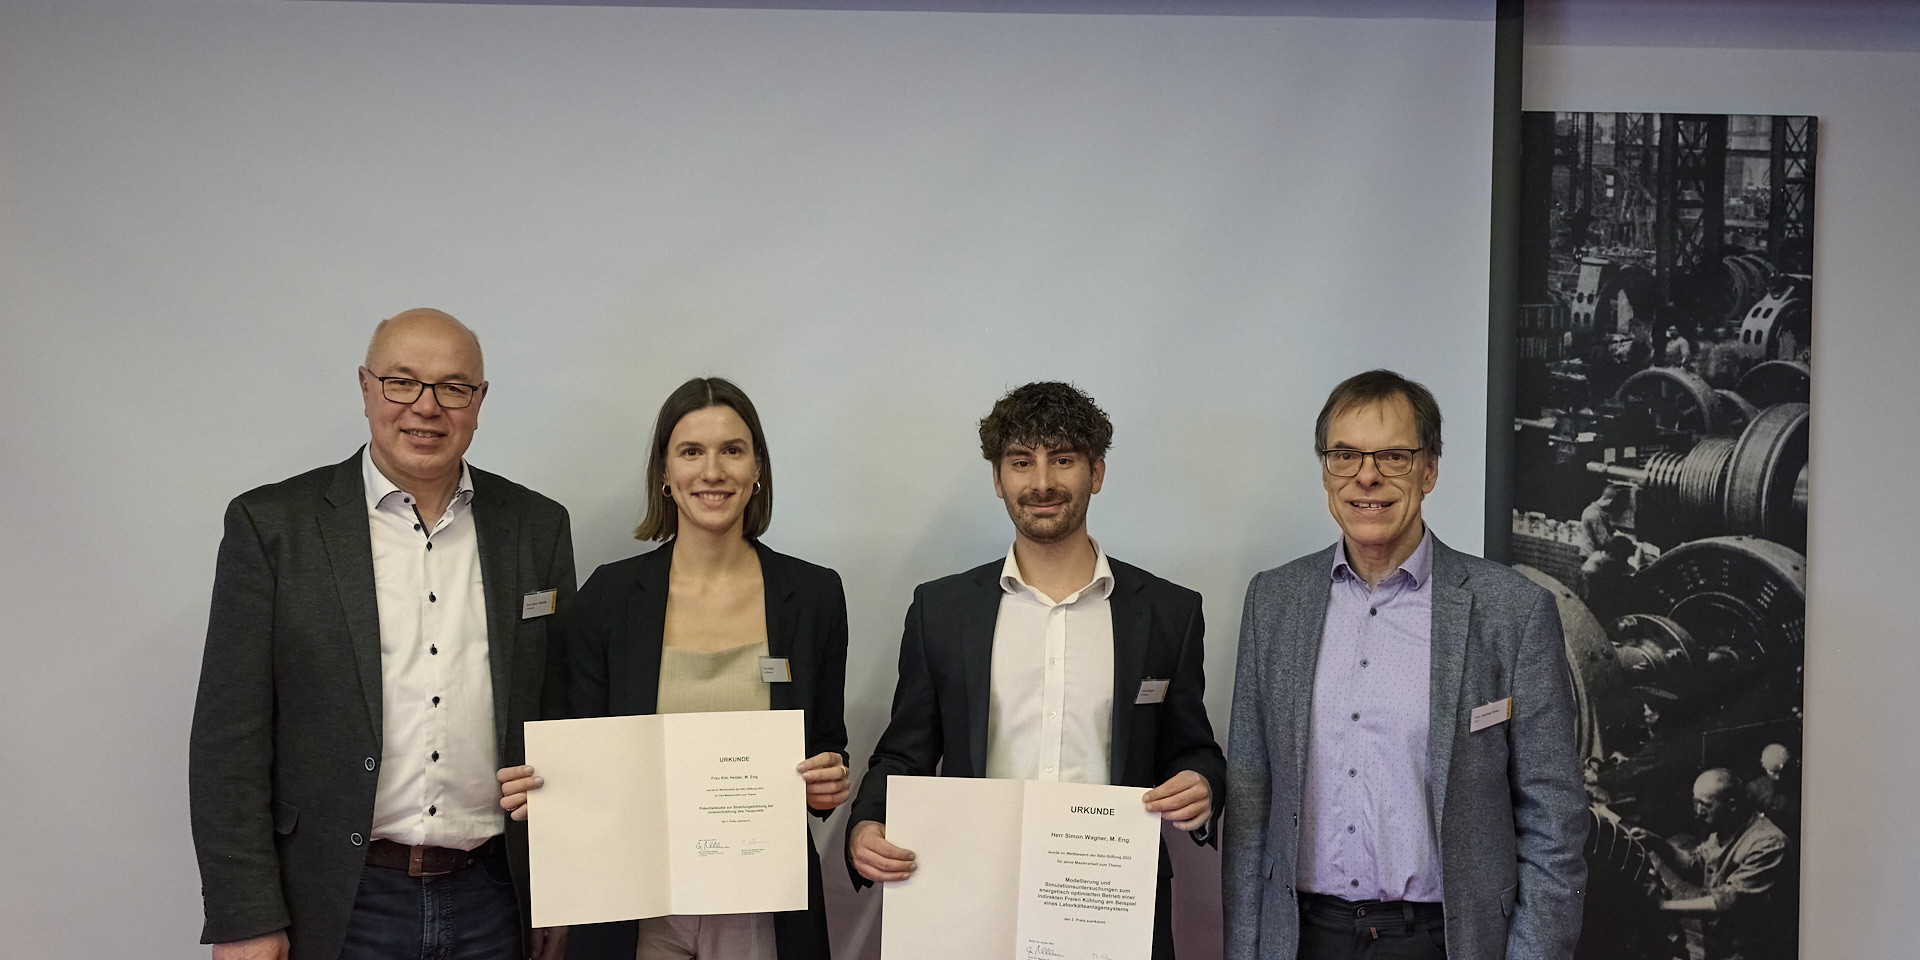 Vier Personen bei Urkunden-Verleihung des Baelz-Preises